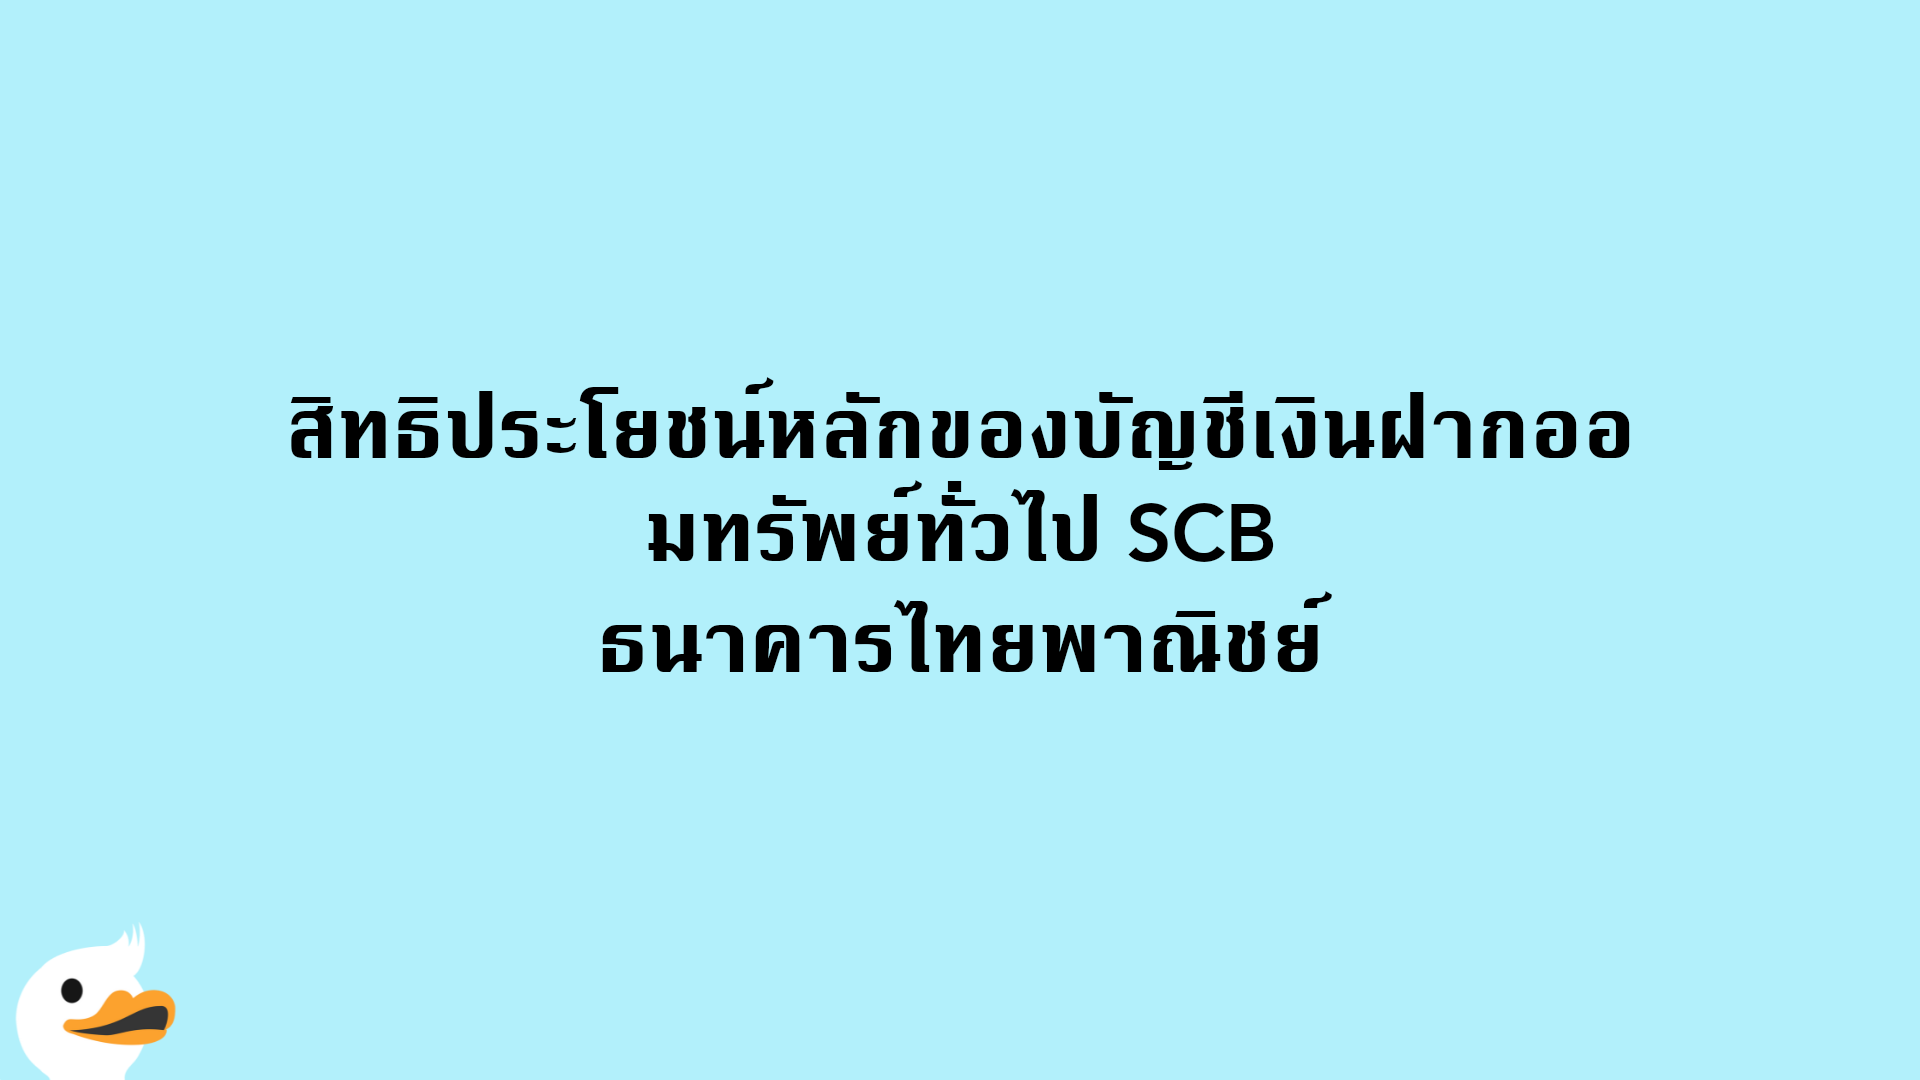 สิทธิประโยชน์หลักของบัญชีเงินฝากออมทรัพย์ทั่วไป SCB ธนาคารไทยพาณิชย์